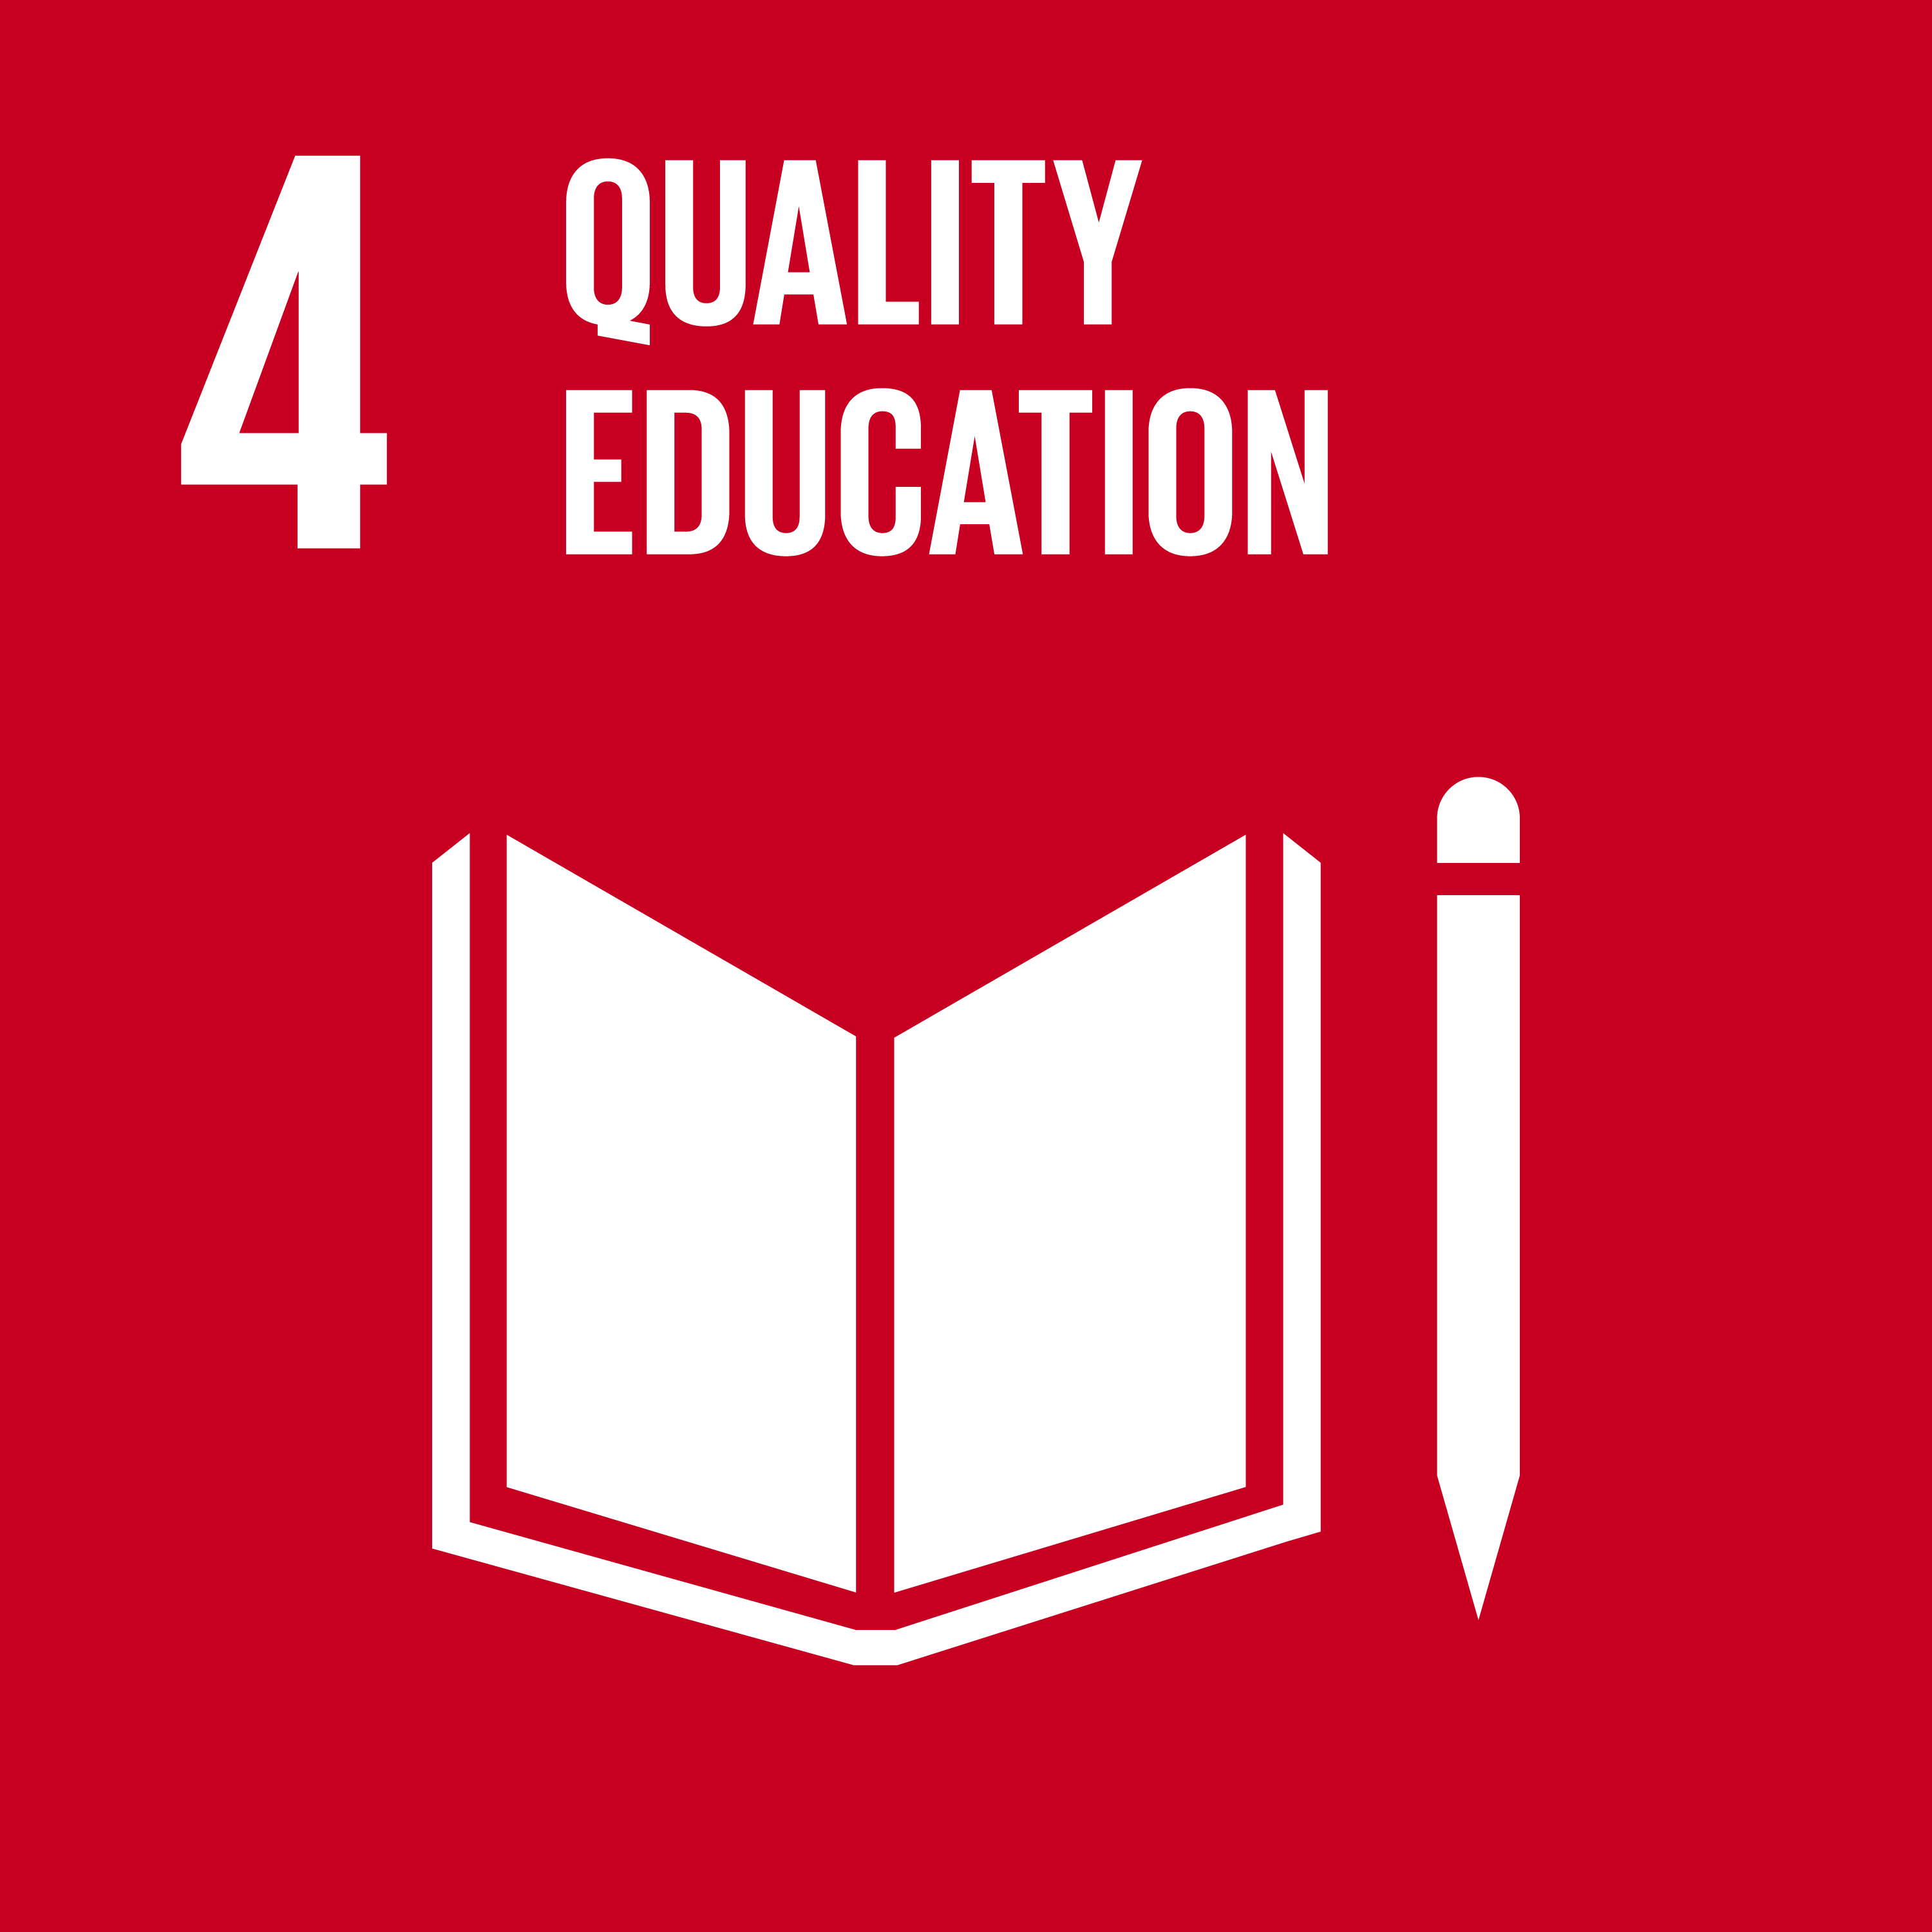 ODS 4 - Educação de qualidade